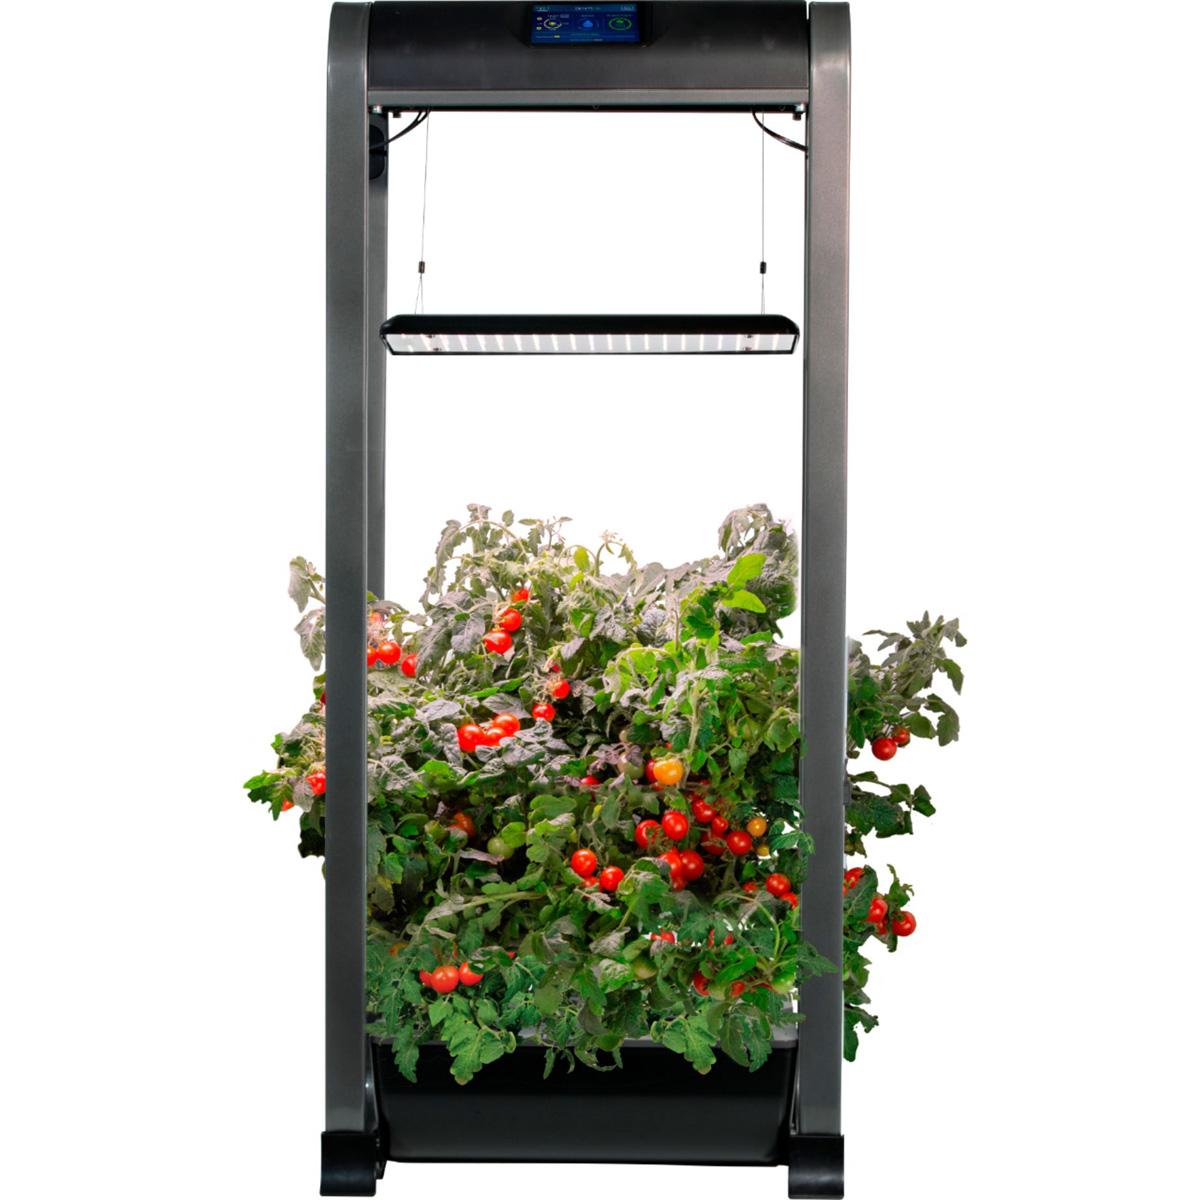 AeroGarden Farm 12 XL In-Home Garden System for $349.99 Shipped